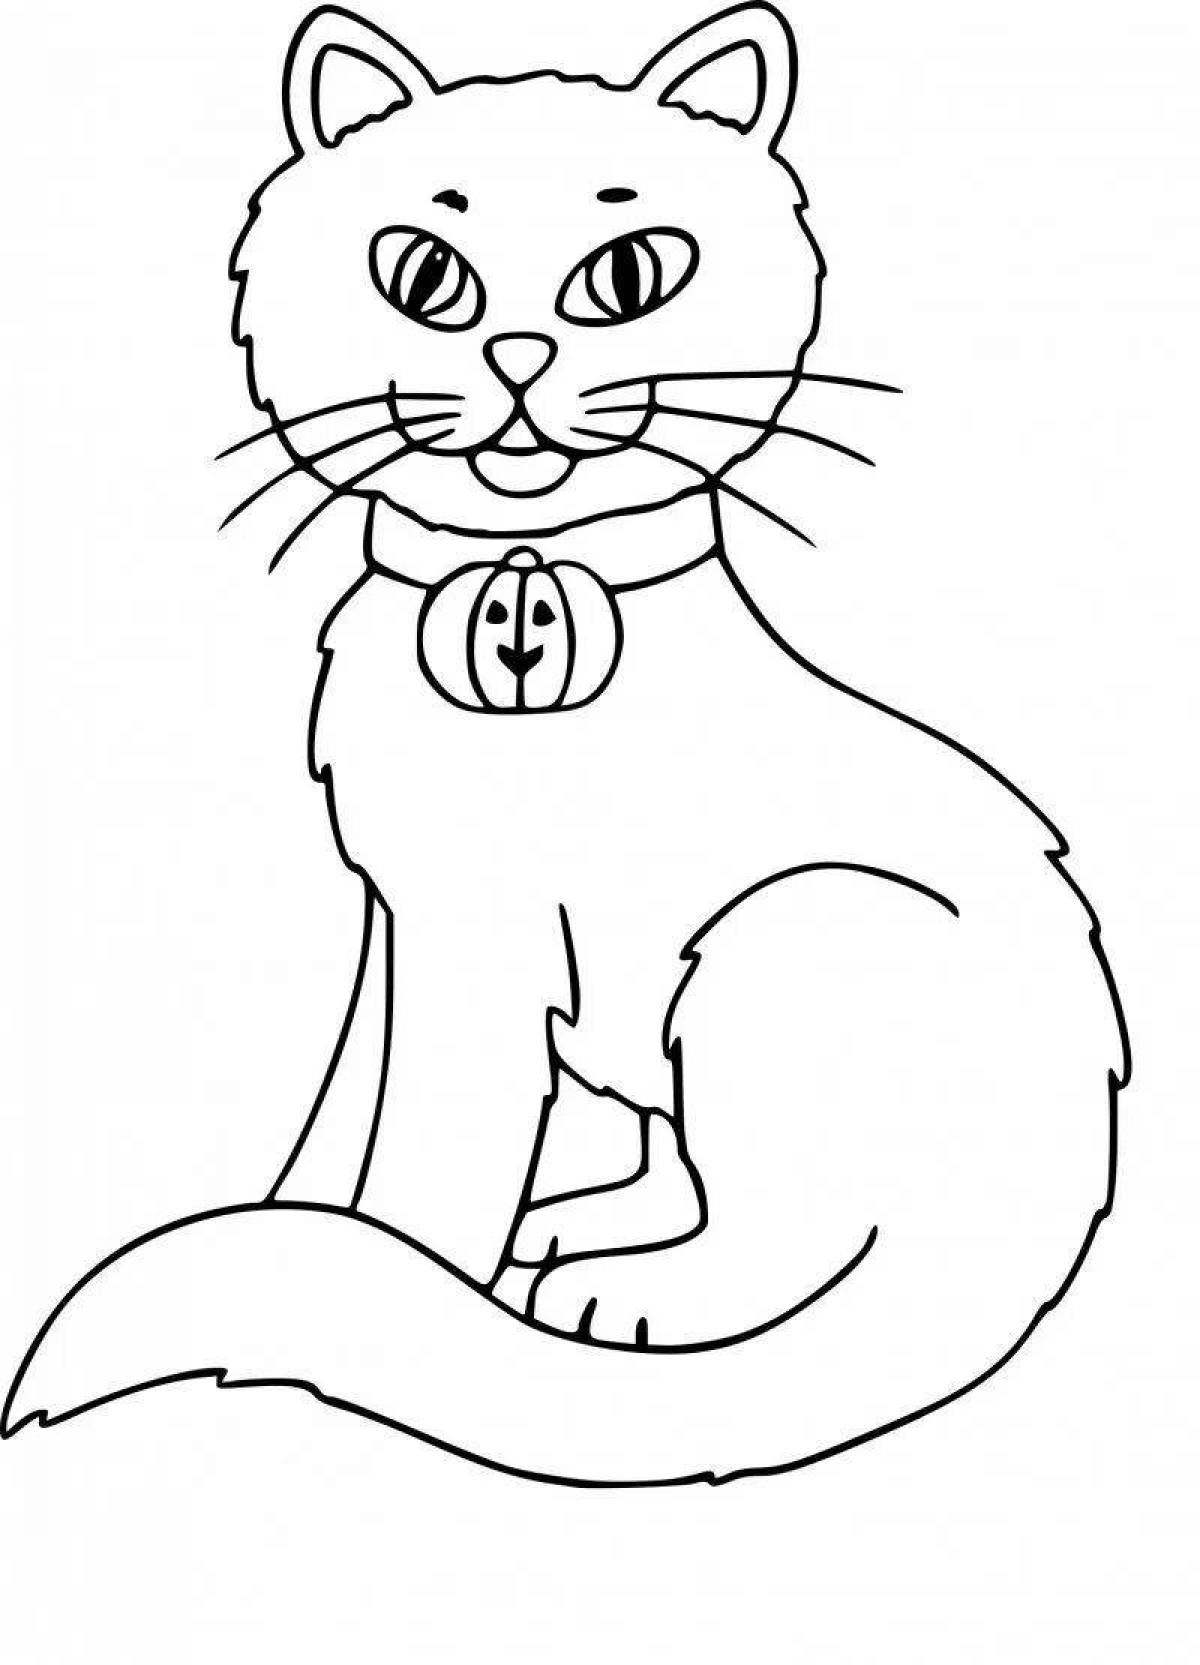 Оживленная страница раскраски сидящего кота